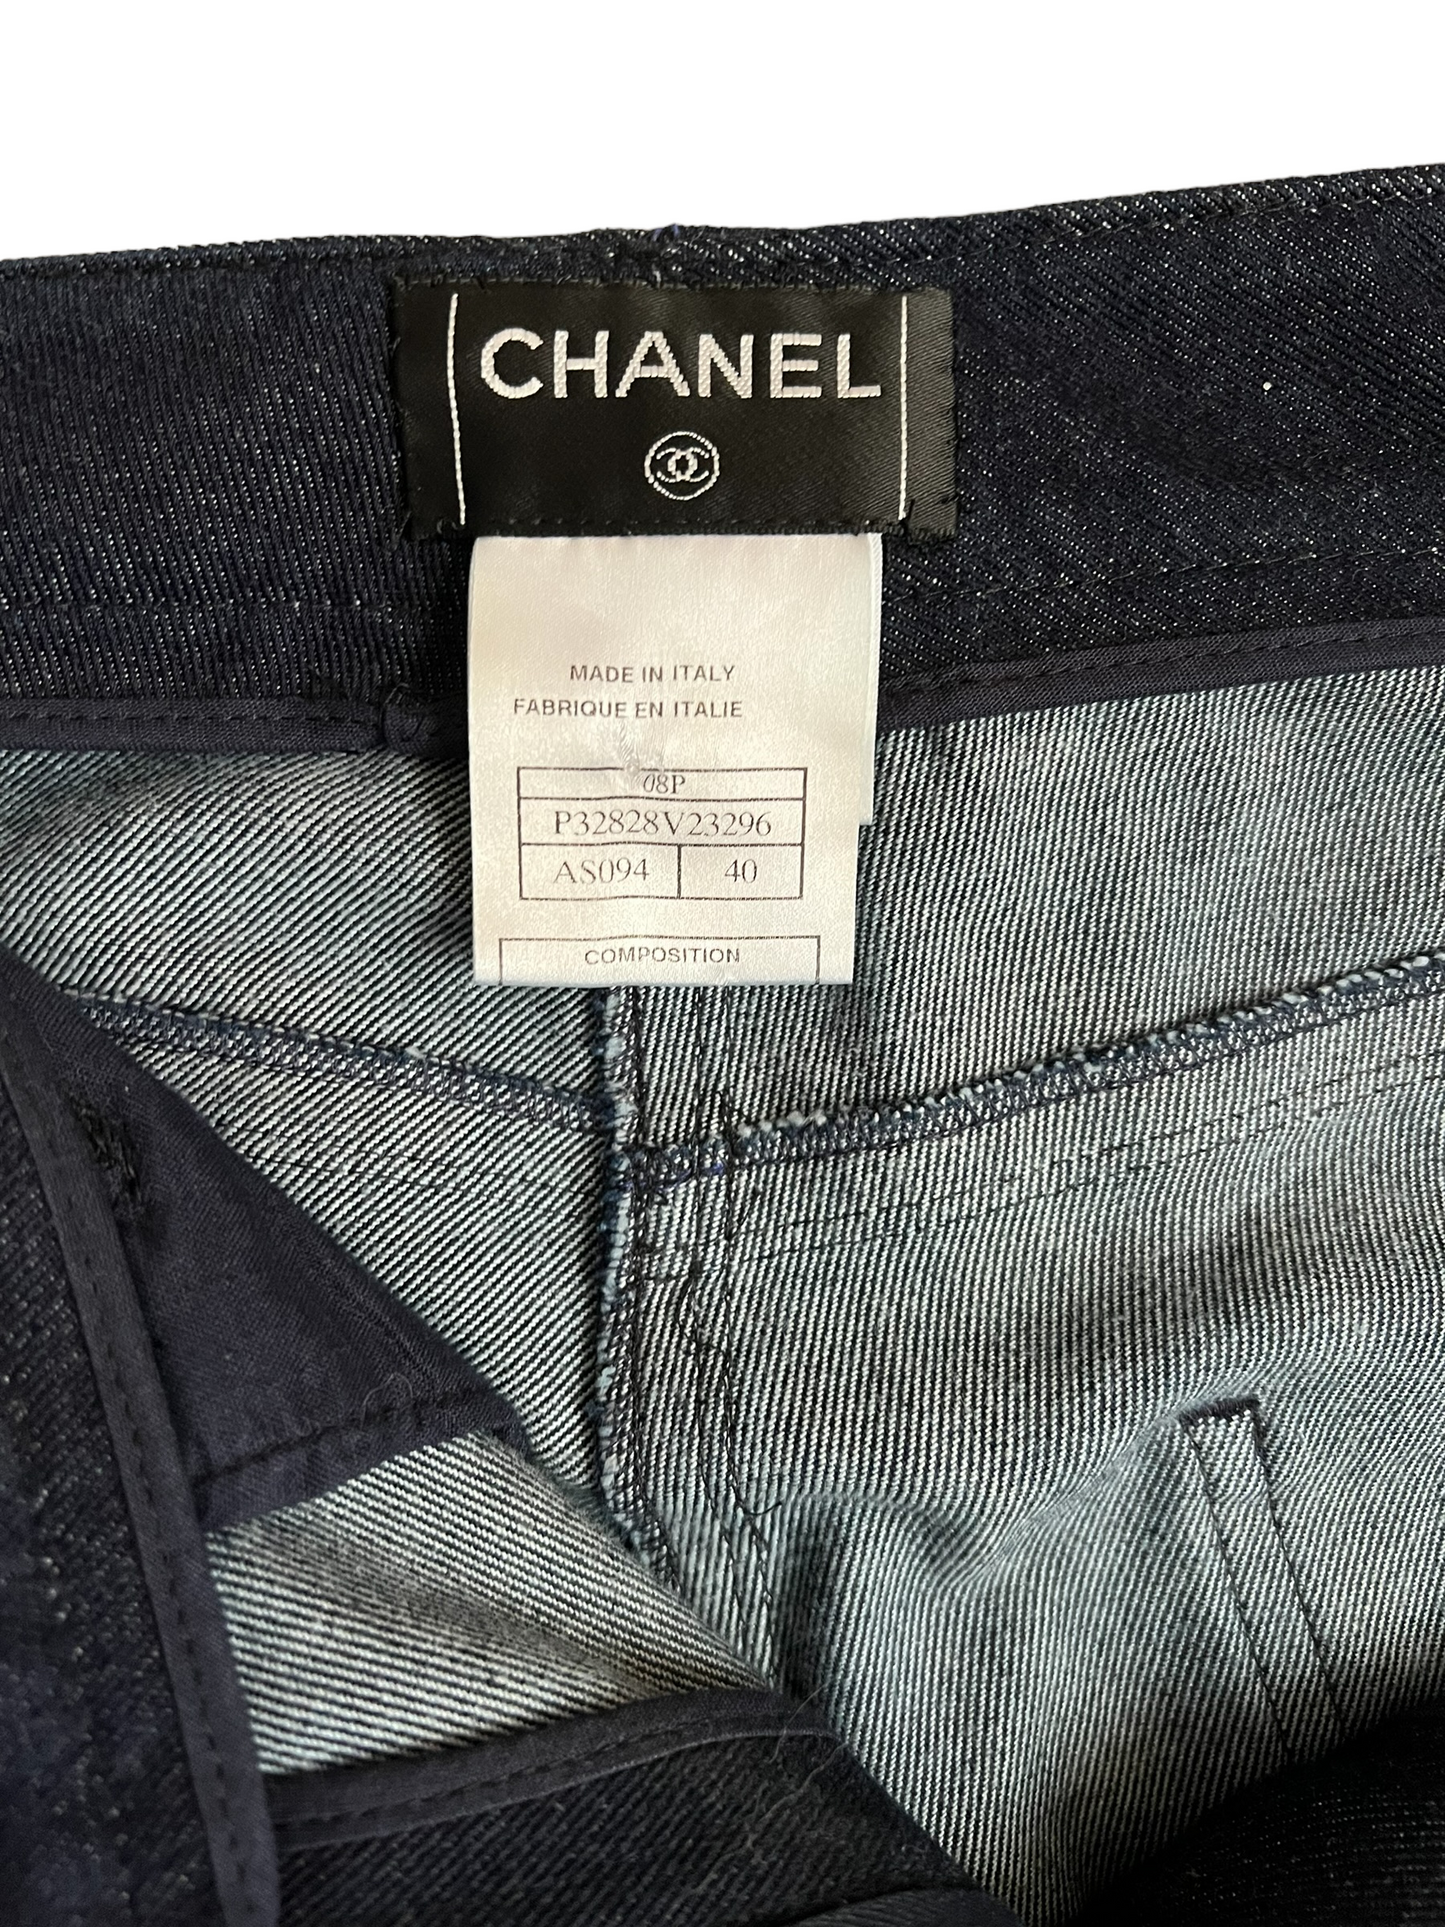 Chanel 08P Slim Leg Size 40 Jeans